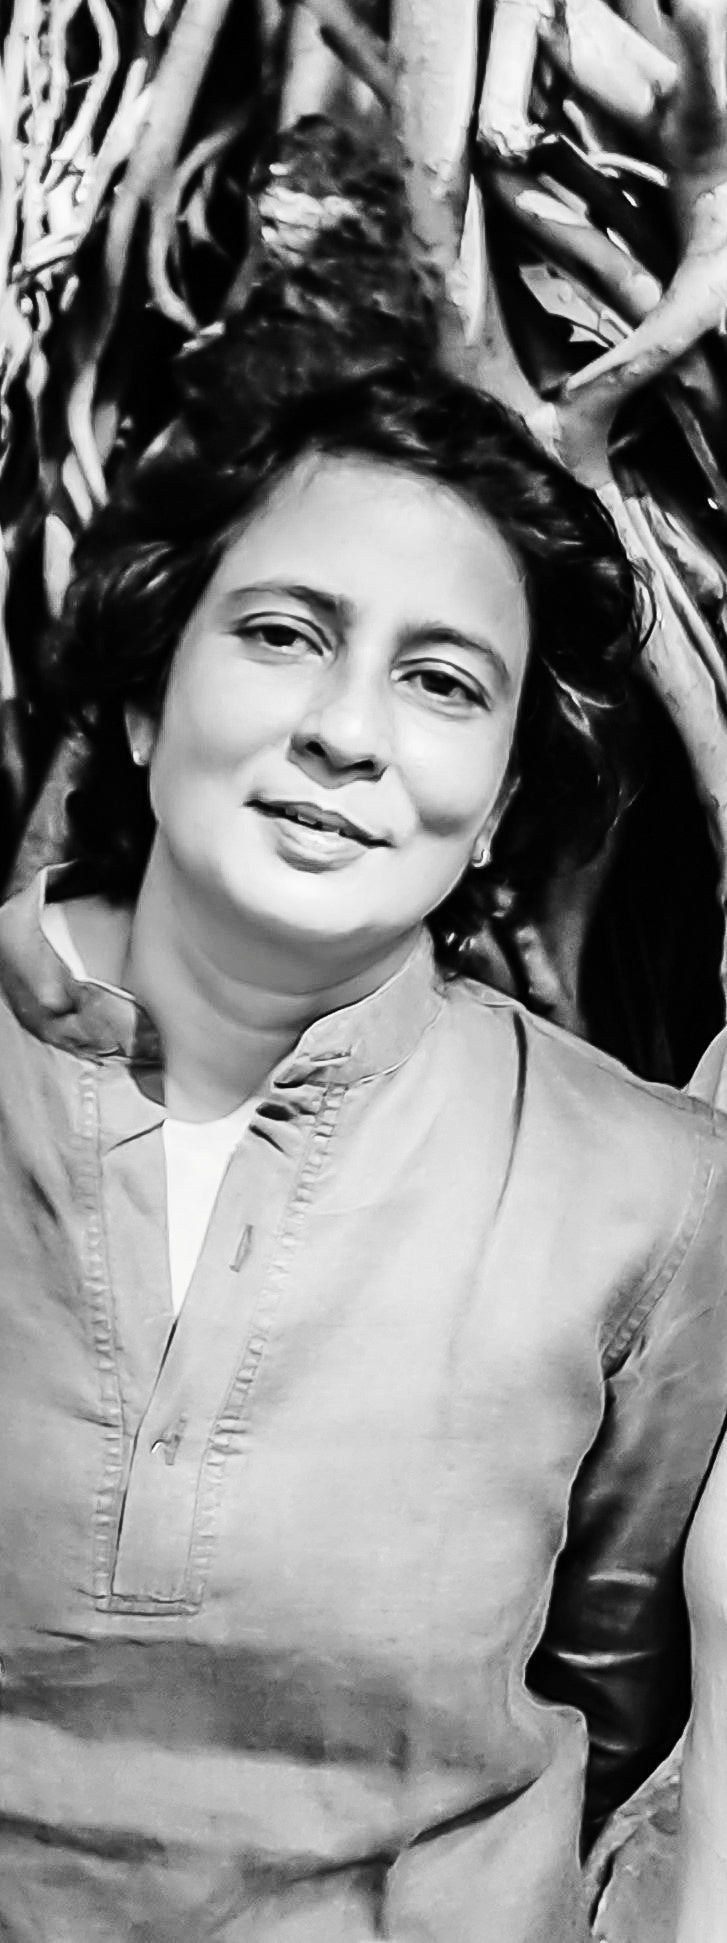 Sheetal Gattani